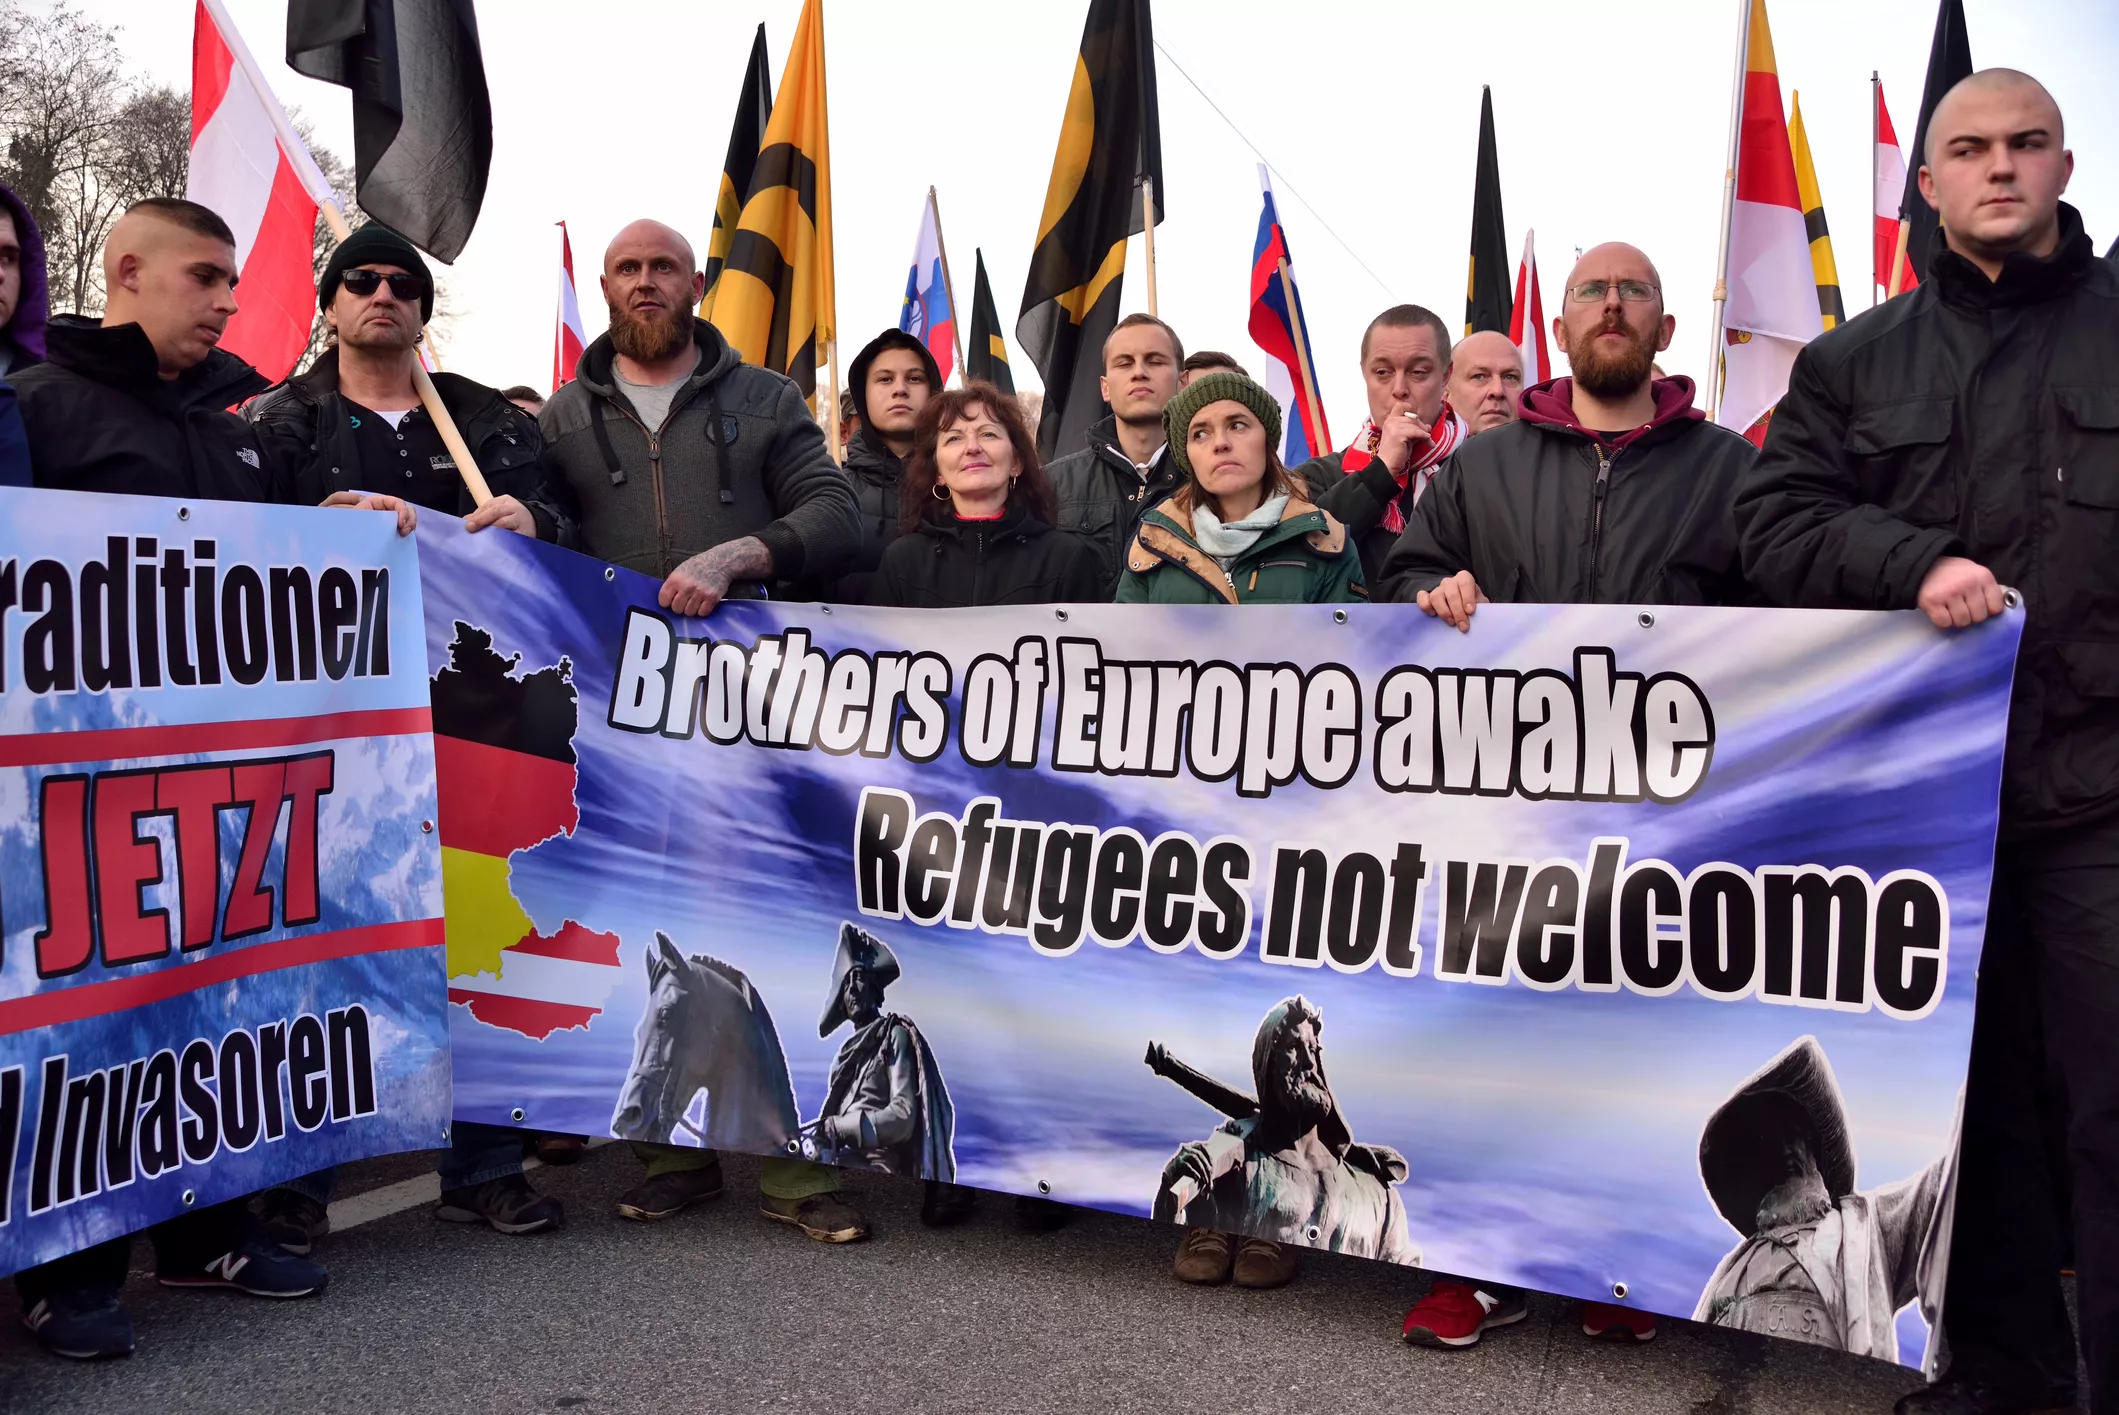 Membres del partit d’extrema dreta austríac Identitäre Bewegung Österreich es maifesten contra els refugiats el novembre del 2015